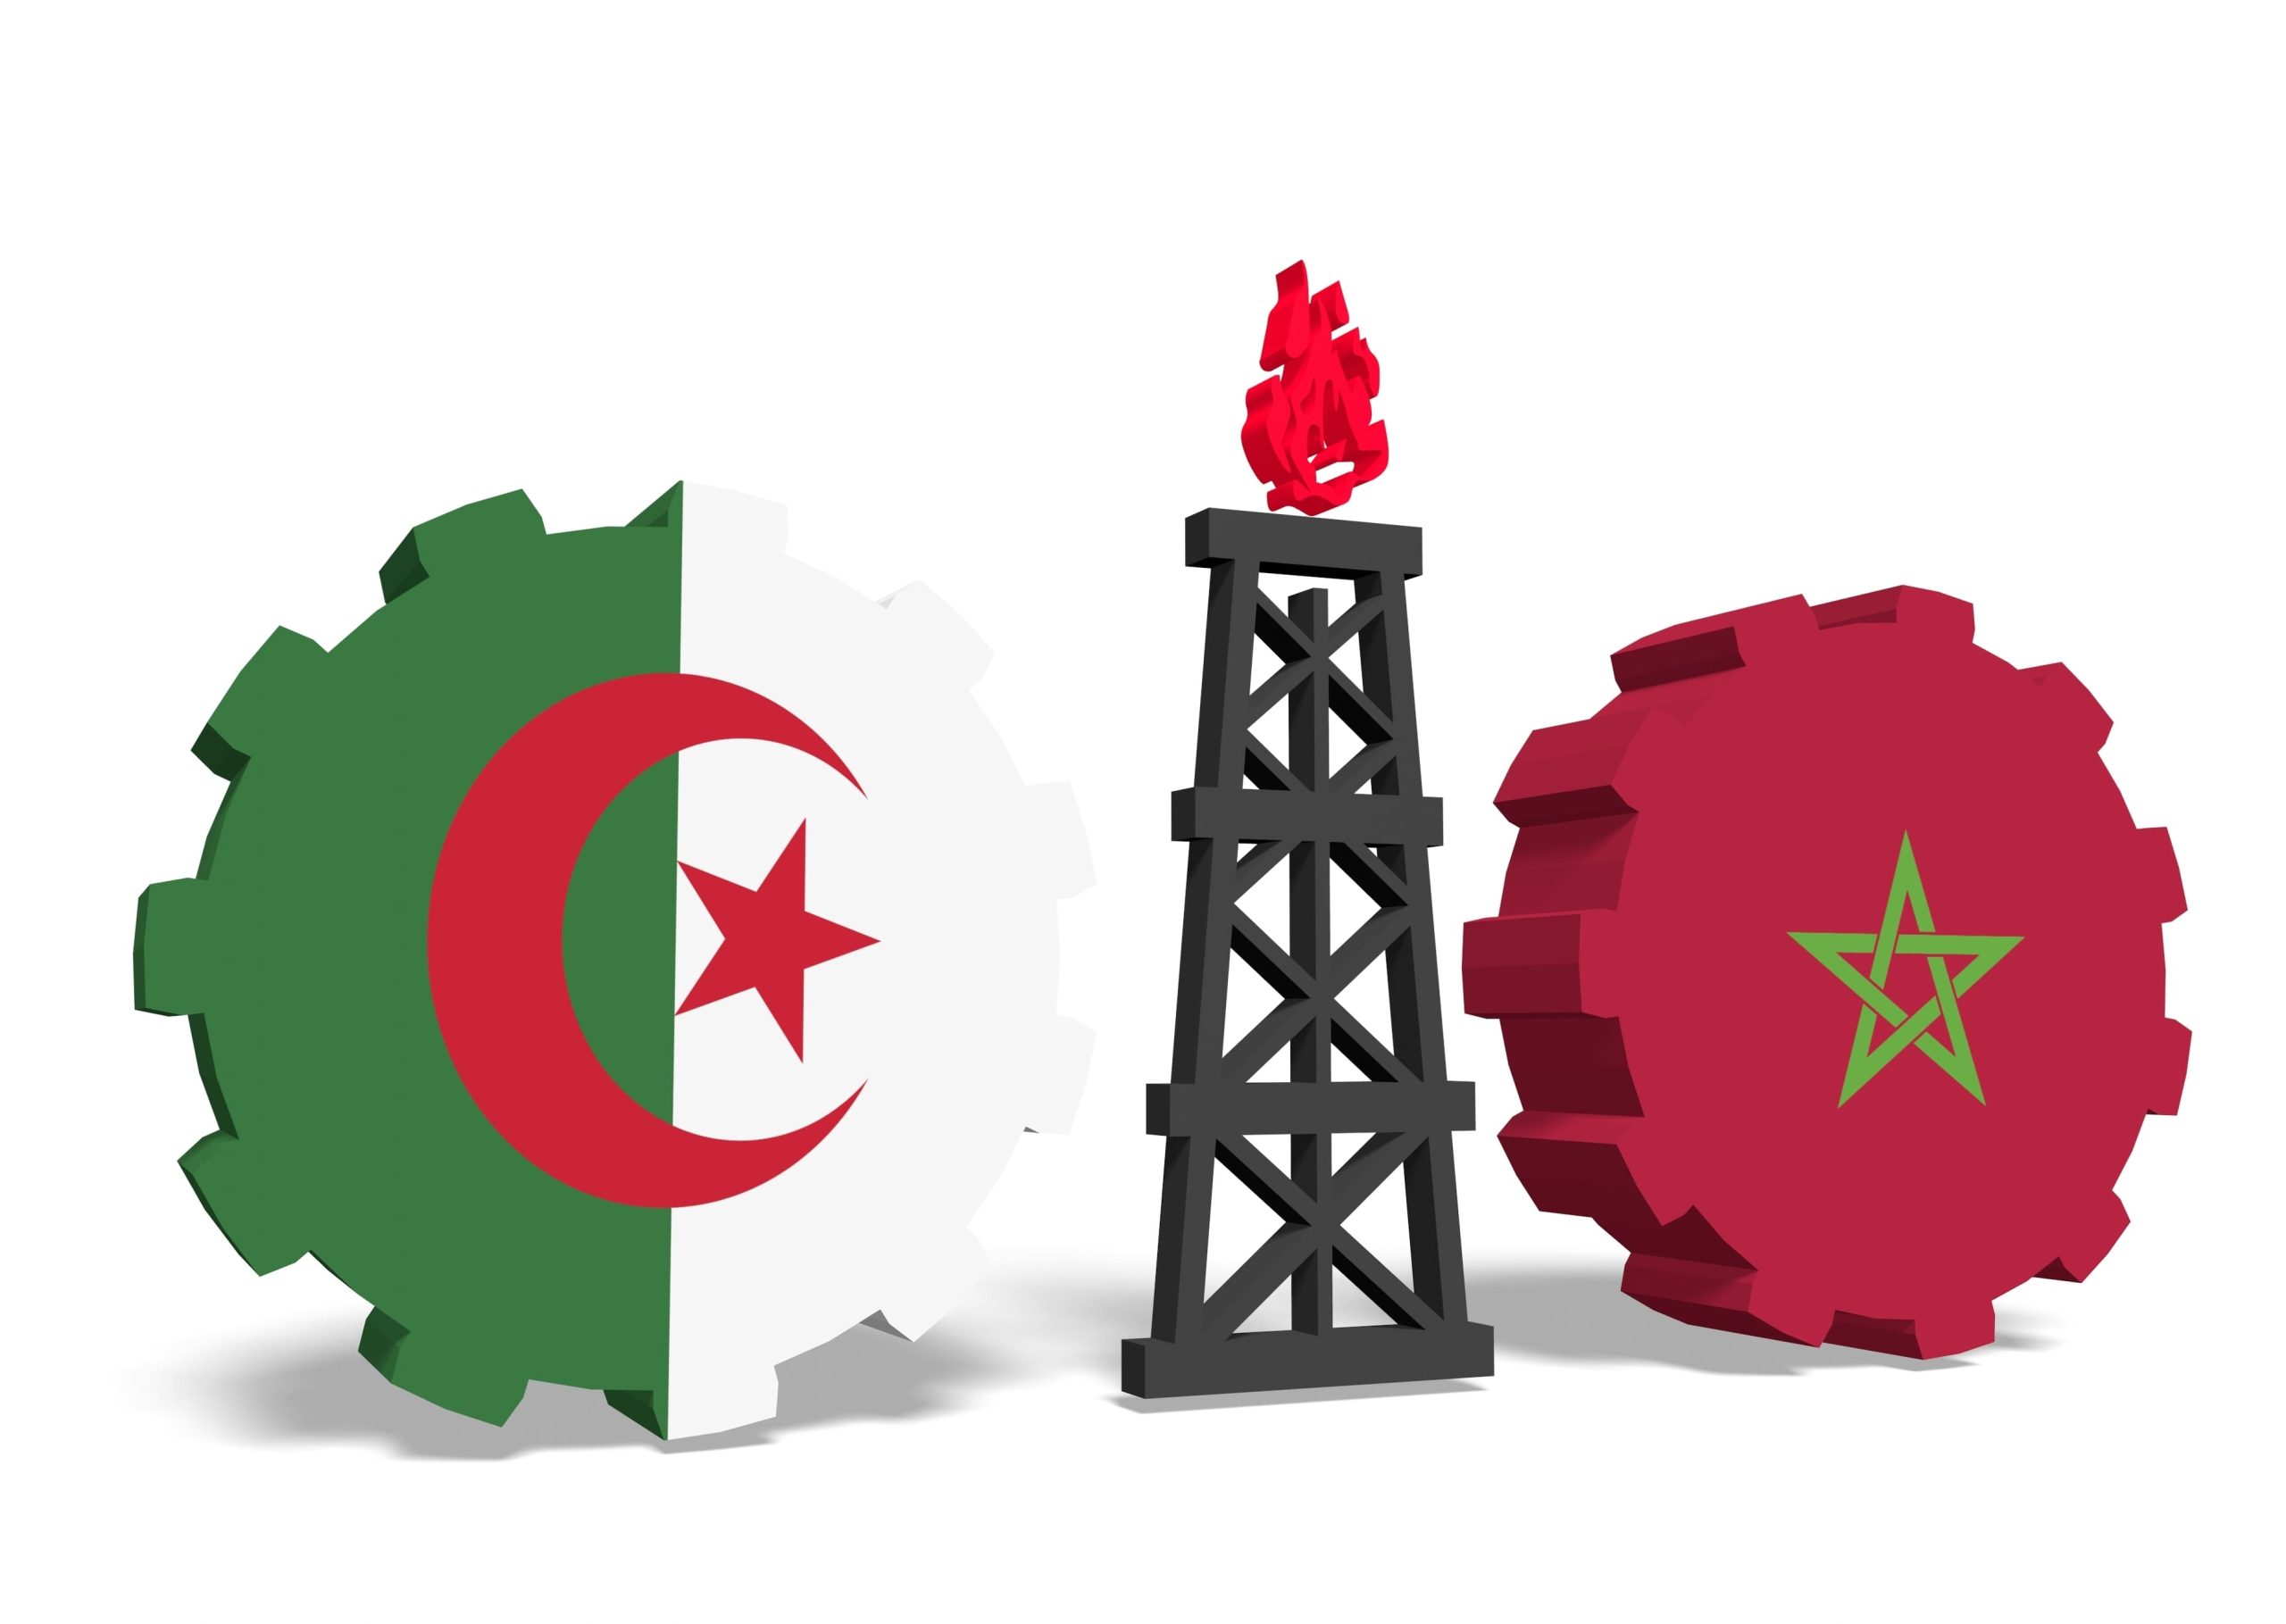 دوافع عدم تجديد الجزائر لعقد الغاز المارّ بالمغرب